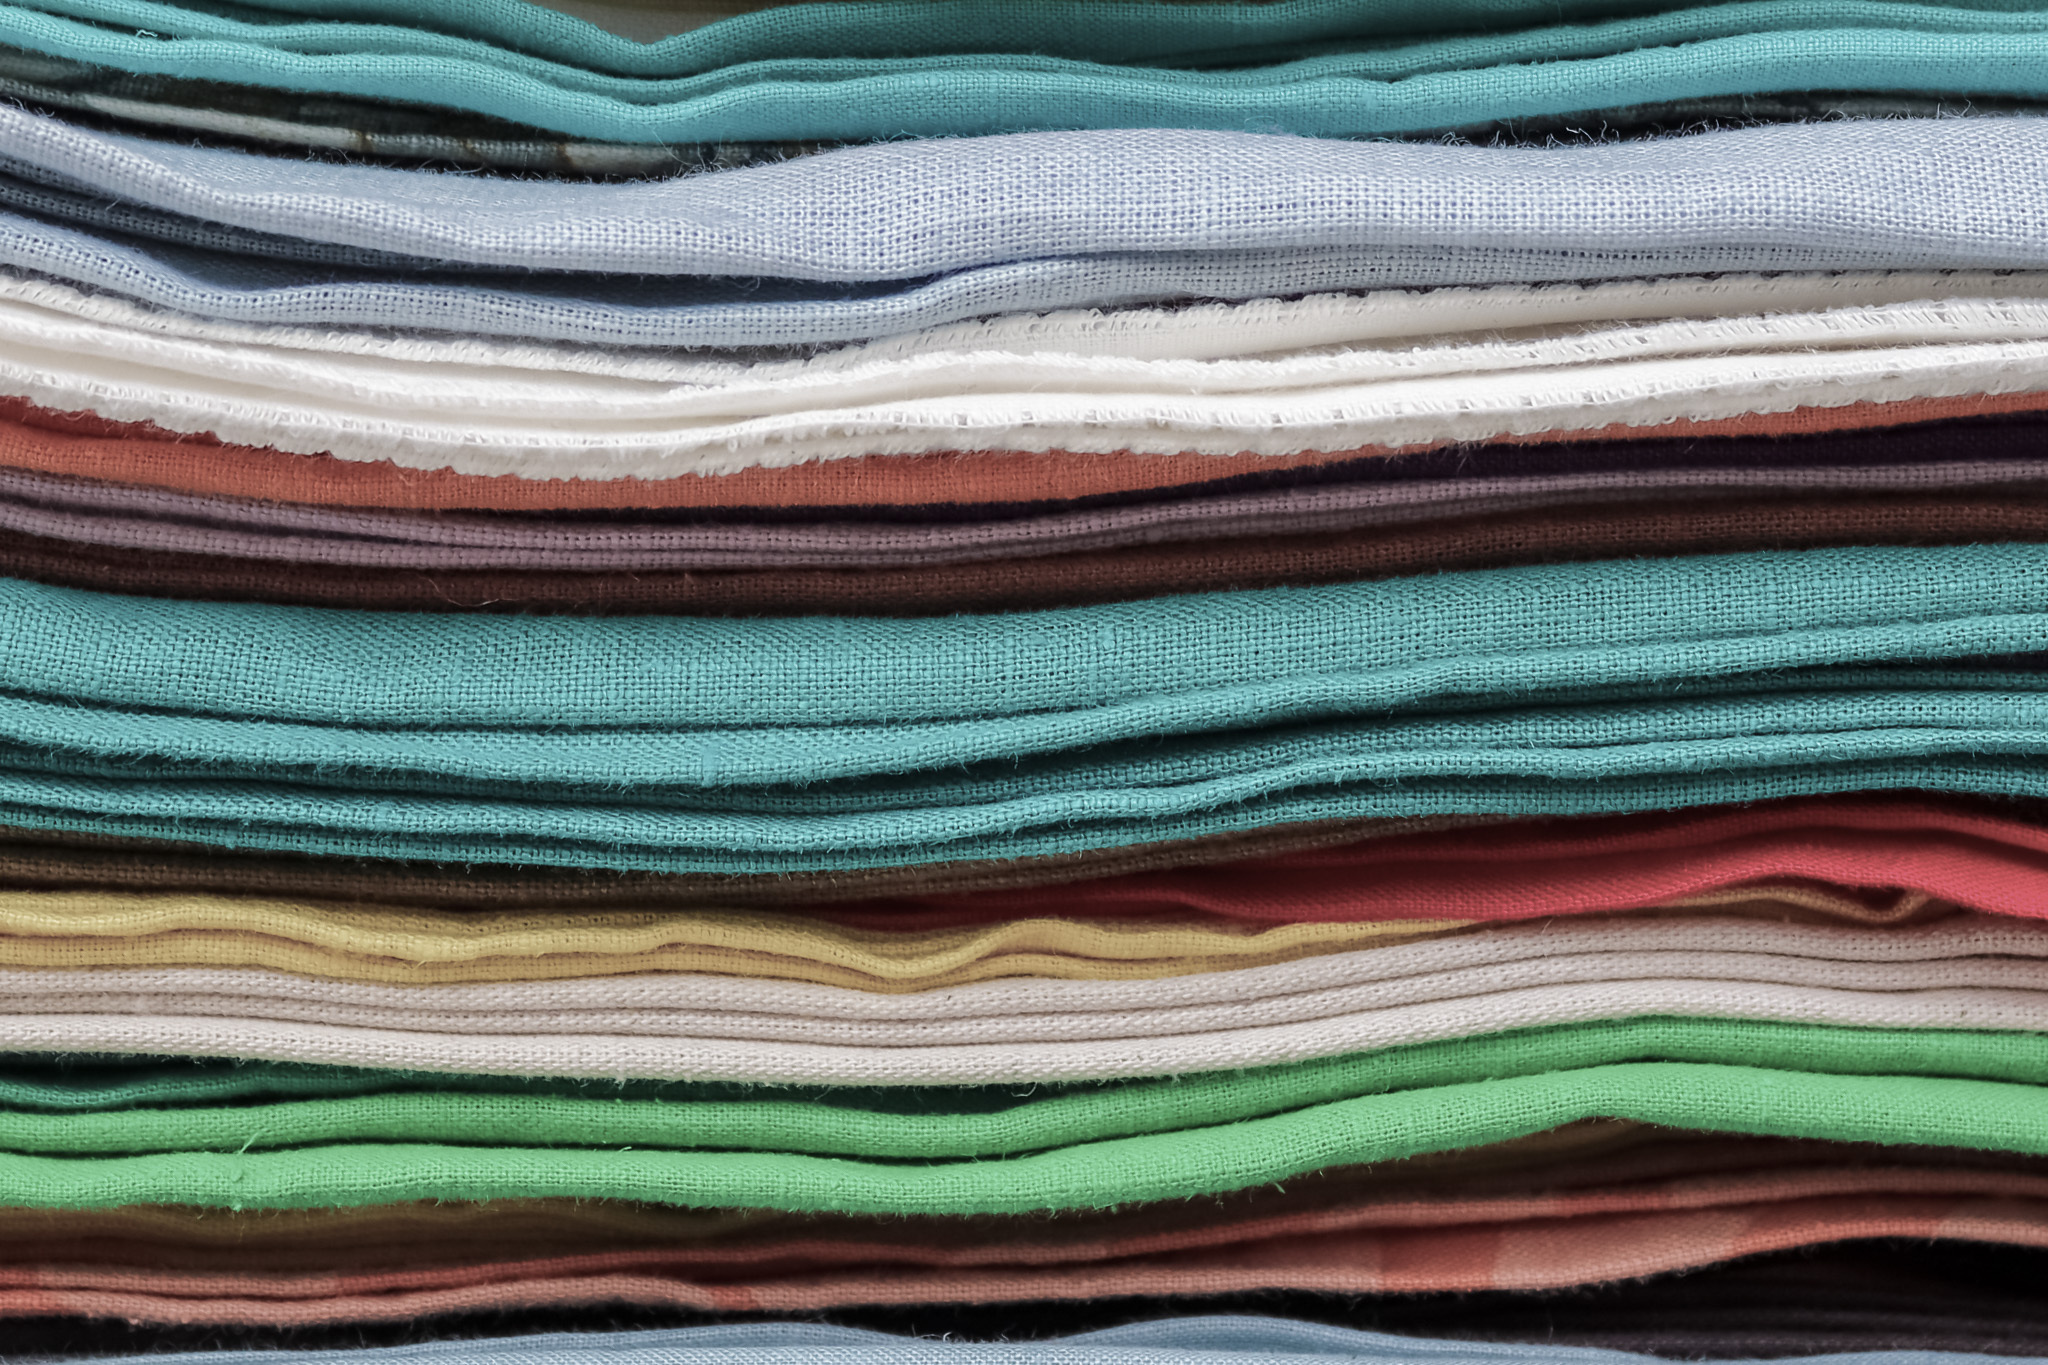 Fabric textile material texture 2023 02 01 06 13 04 utc